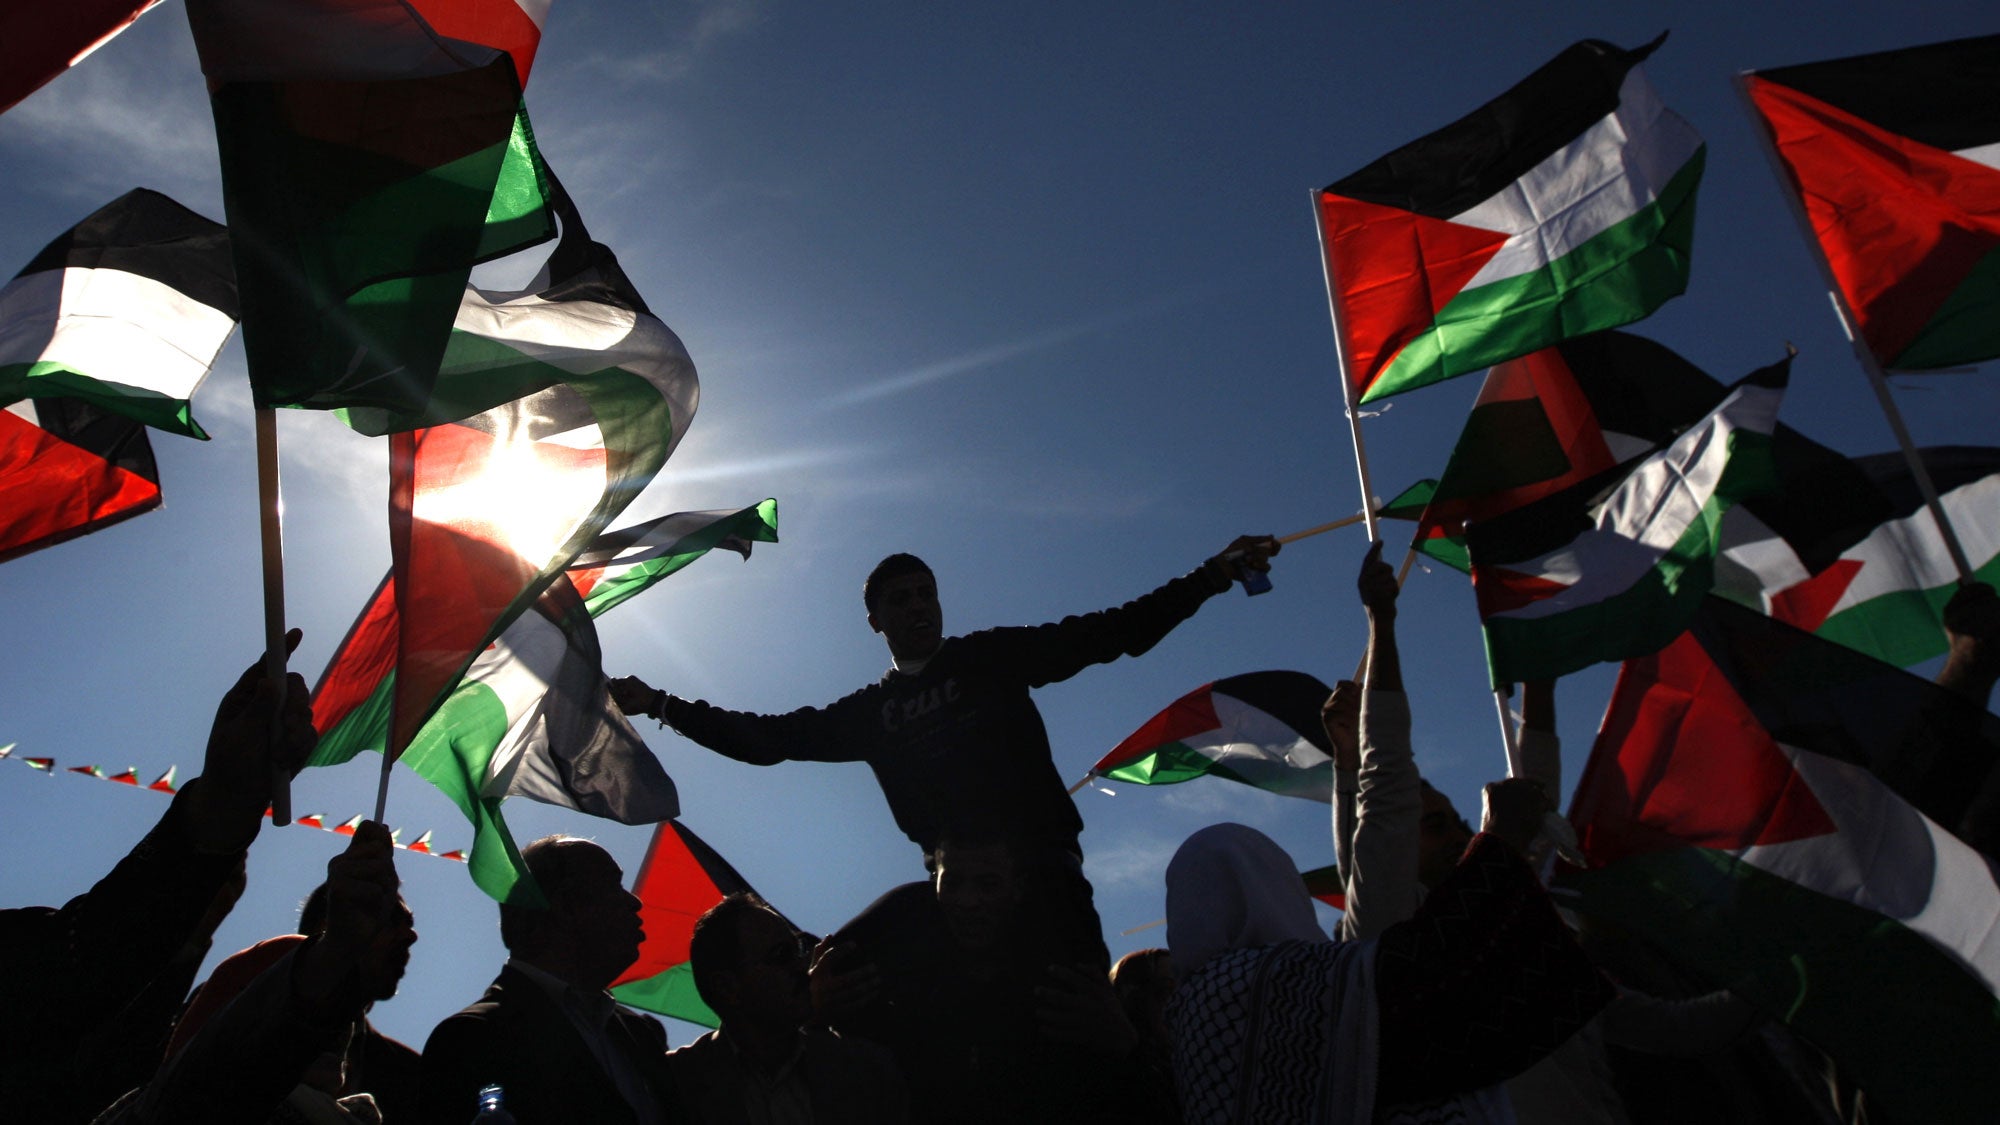 Την αναγνώριση του κράτους της Παλαιστίνης ανακοίνωσαν Ισπανία, Νορβηγία και Ιρλανδία. Αντιδράσεις από το Ισραήλ